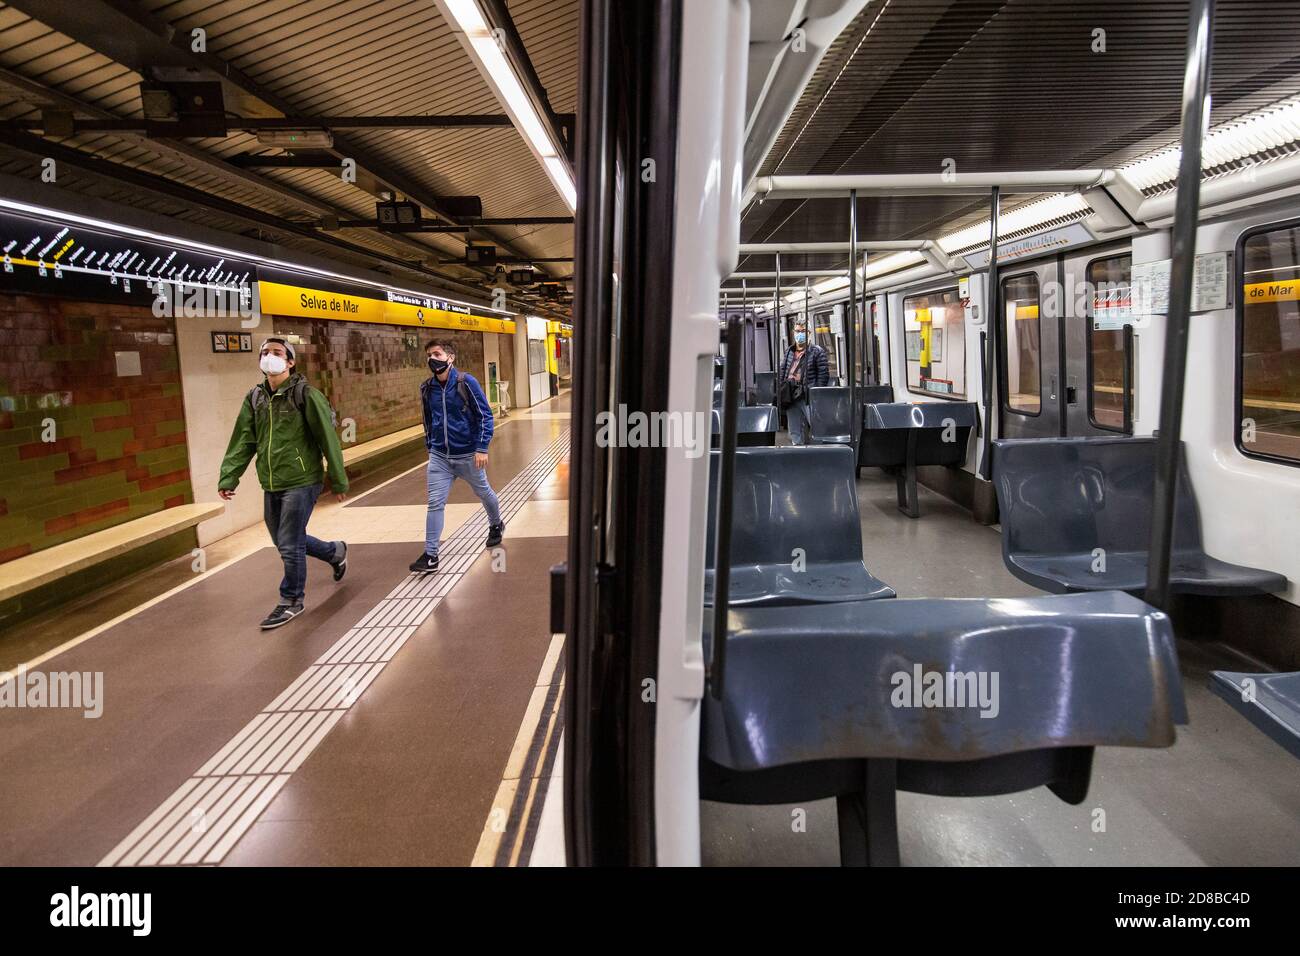 2020.10.28. Barcelone, Espagne. 22:45 h. Deux gars de la station de métro presque vide pendant les premières heures du couvre-feu ce jour-là. © Aitor Rodero. Banque D'Images